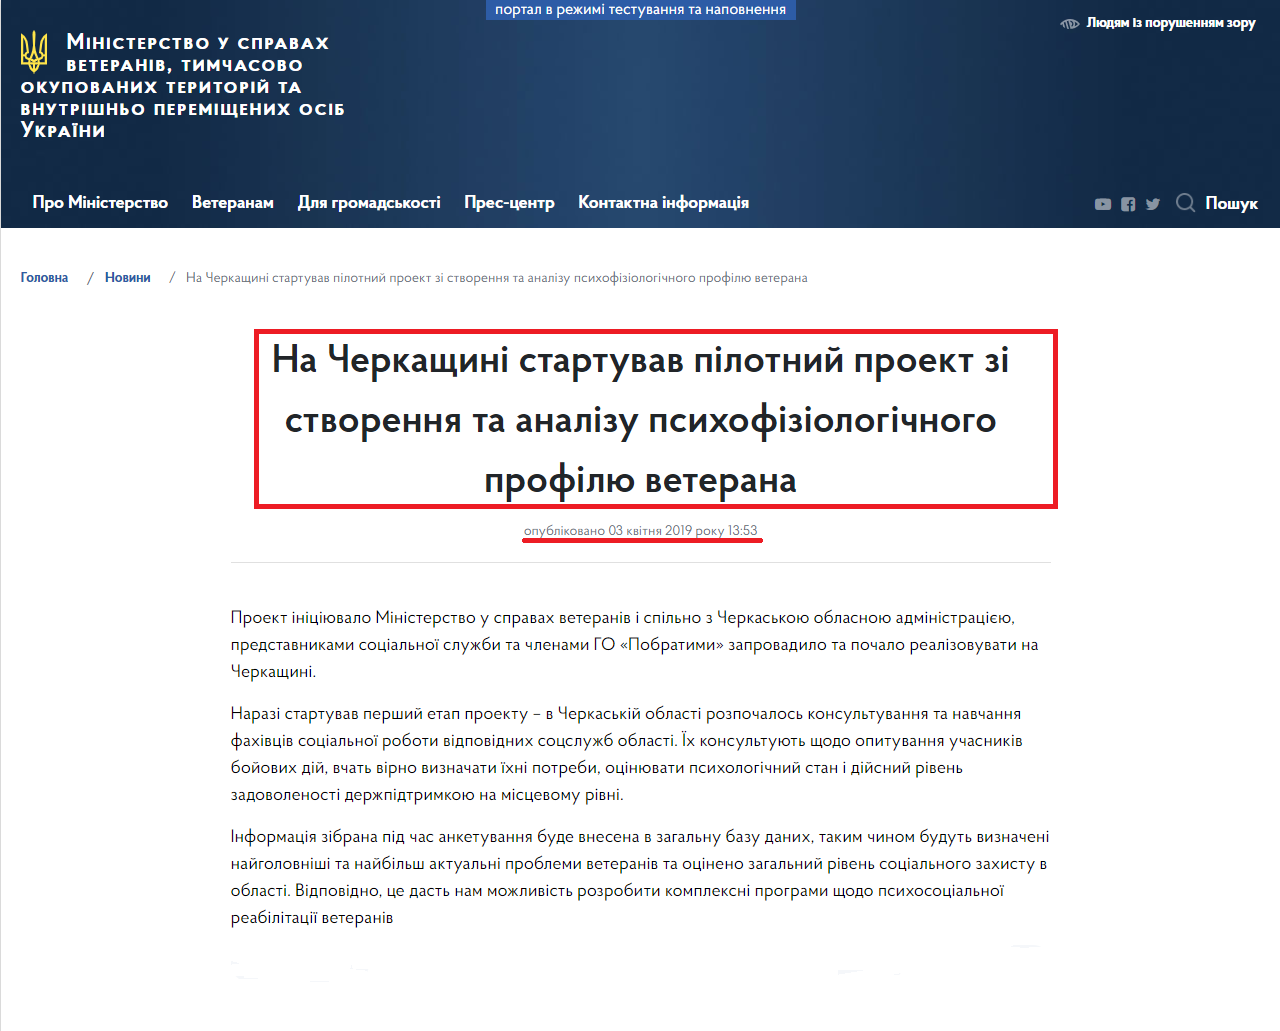 https://mva.gov.ua/ua/news/na-cherkashchini-startuvav-pilotnij-proekt-zi-stvorennya-ta-analizu-psihofiziologichnogo-profilyu-veterana